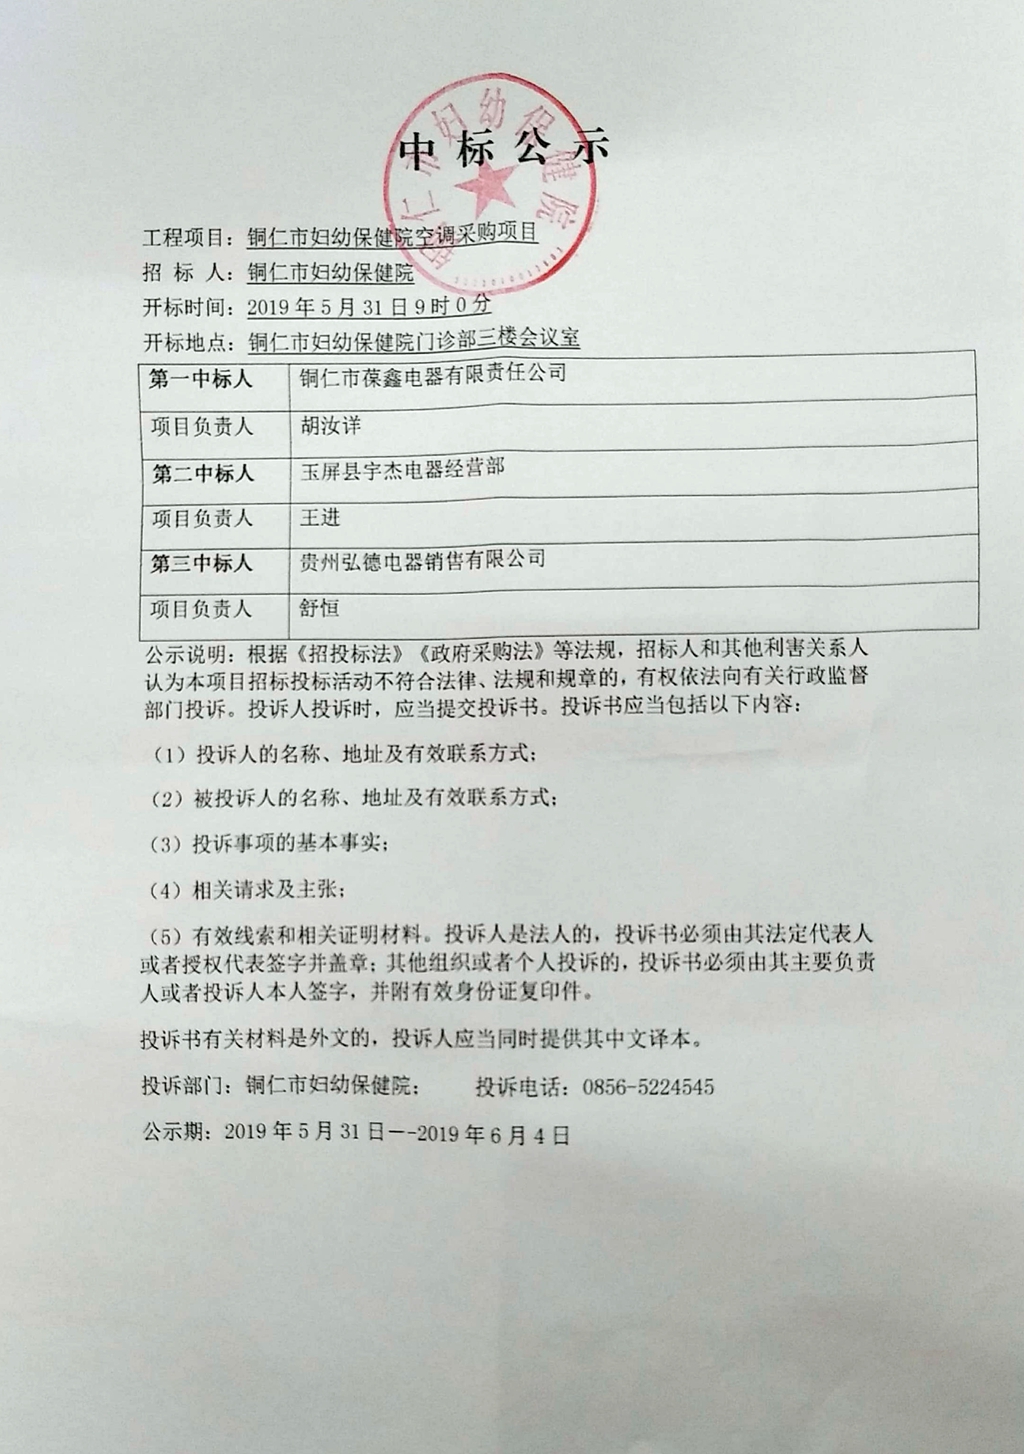 铜仁市妇幼保健院空调采购项目中标公示